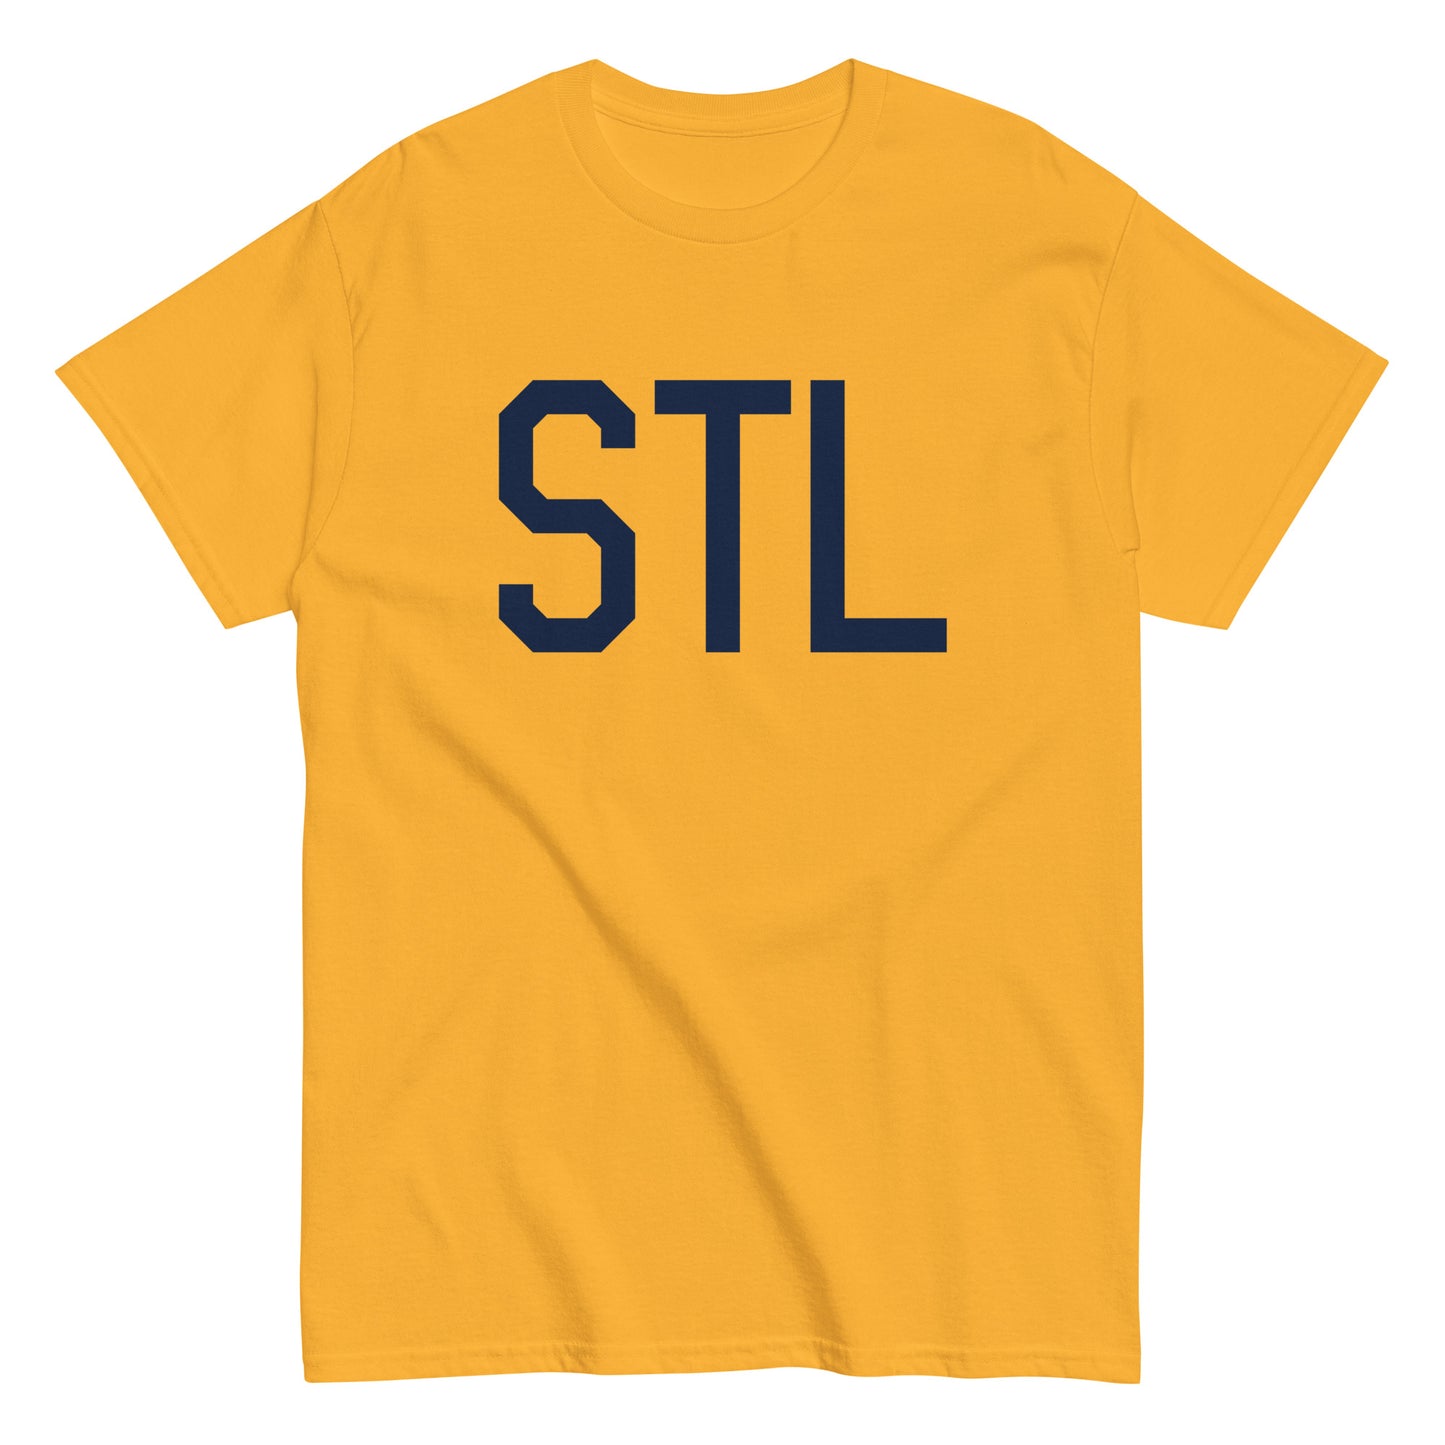 Aviation-Theme Men's T-Shirt - Navy Blue Graphic • STL St. Louis • YHM Designs - Image 01